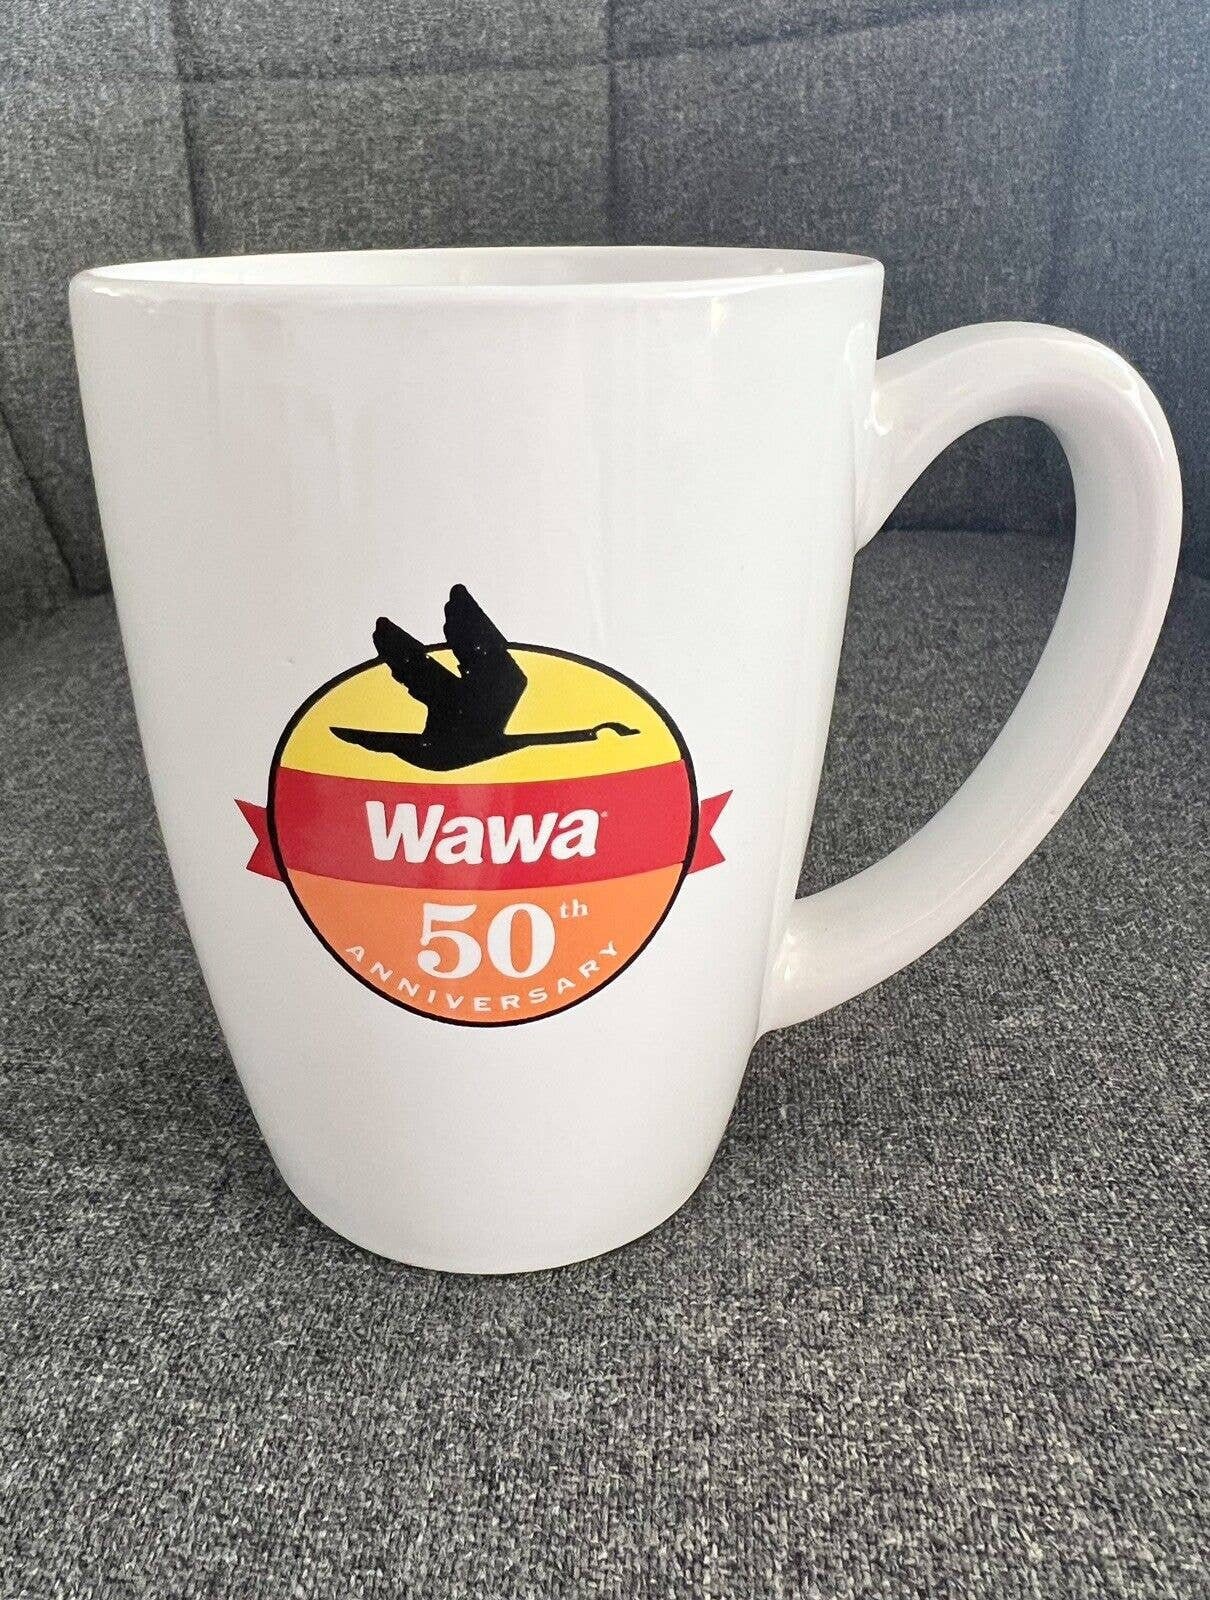 Configure Wawa Coffee To Go Box - Wawa